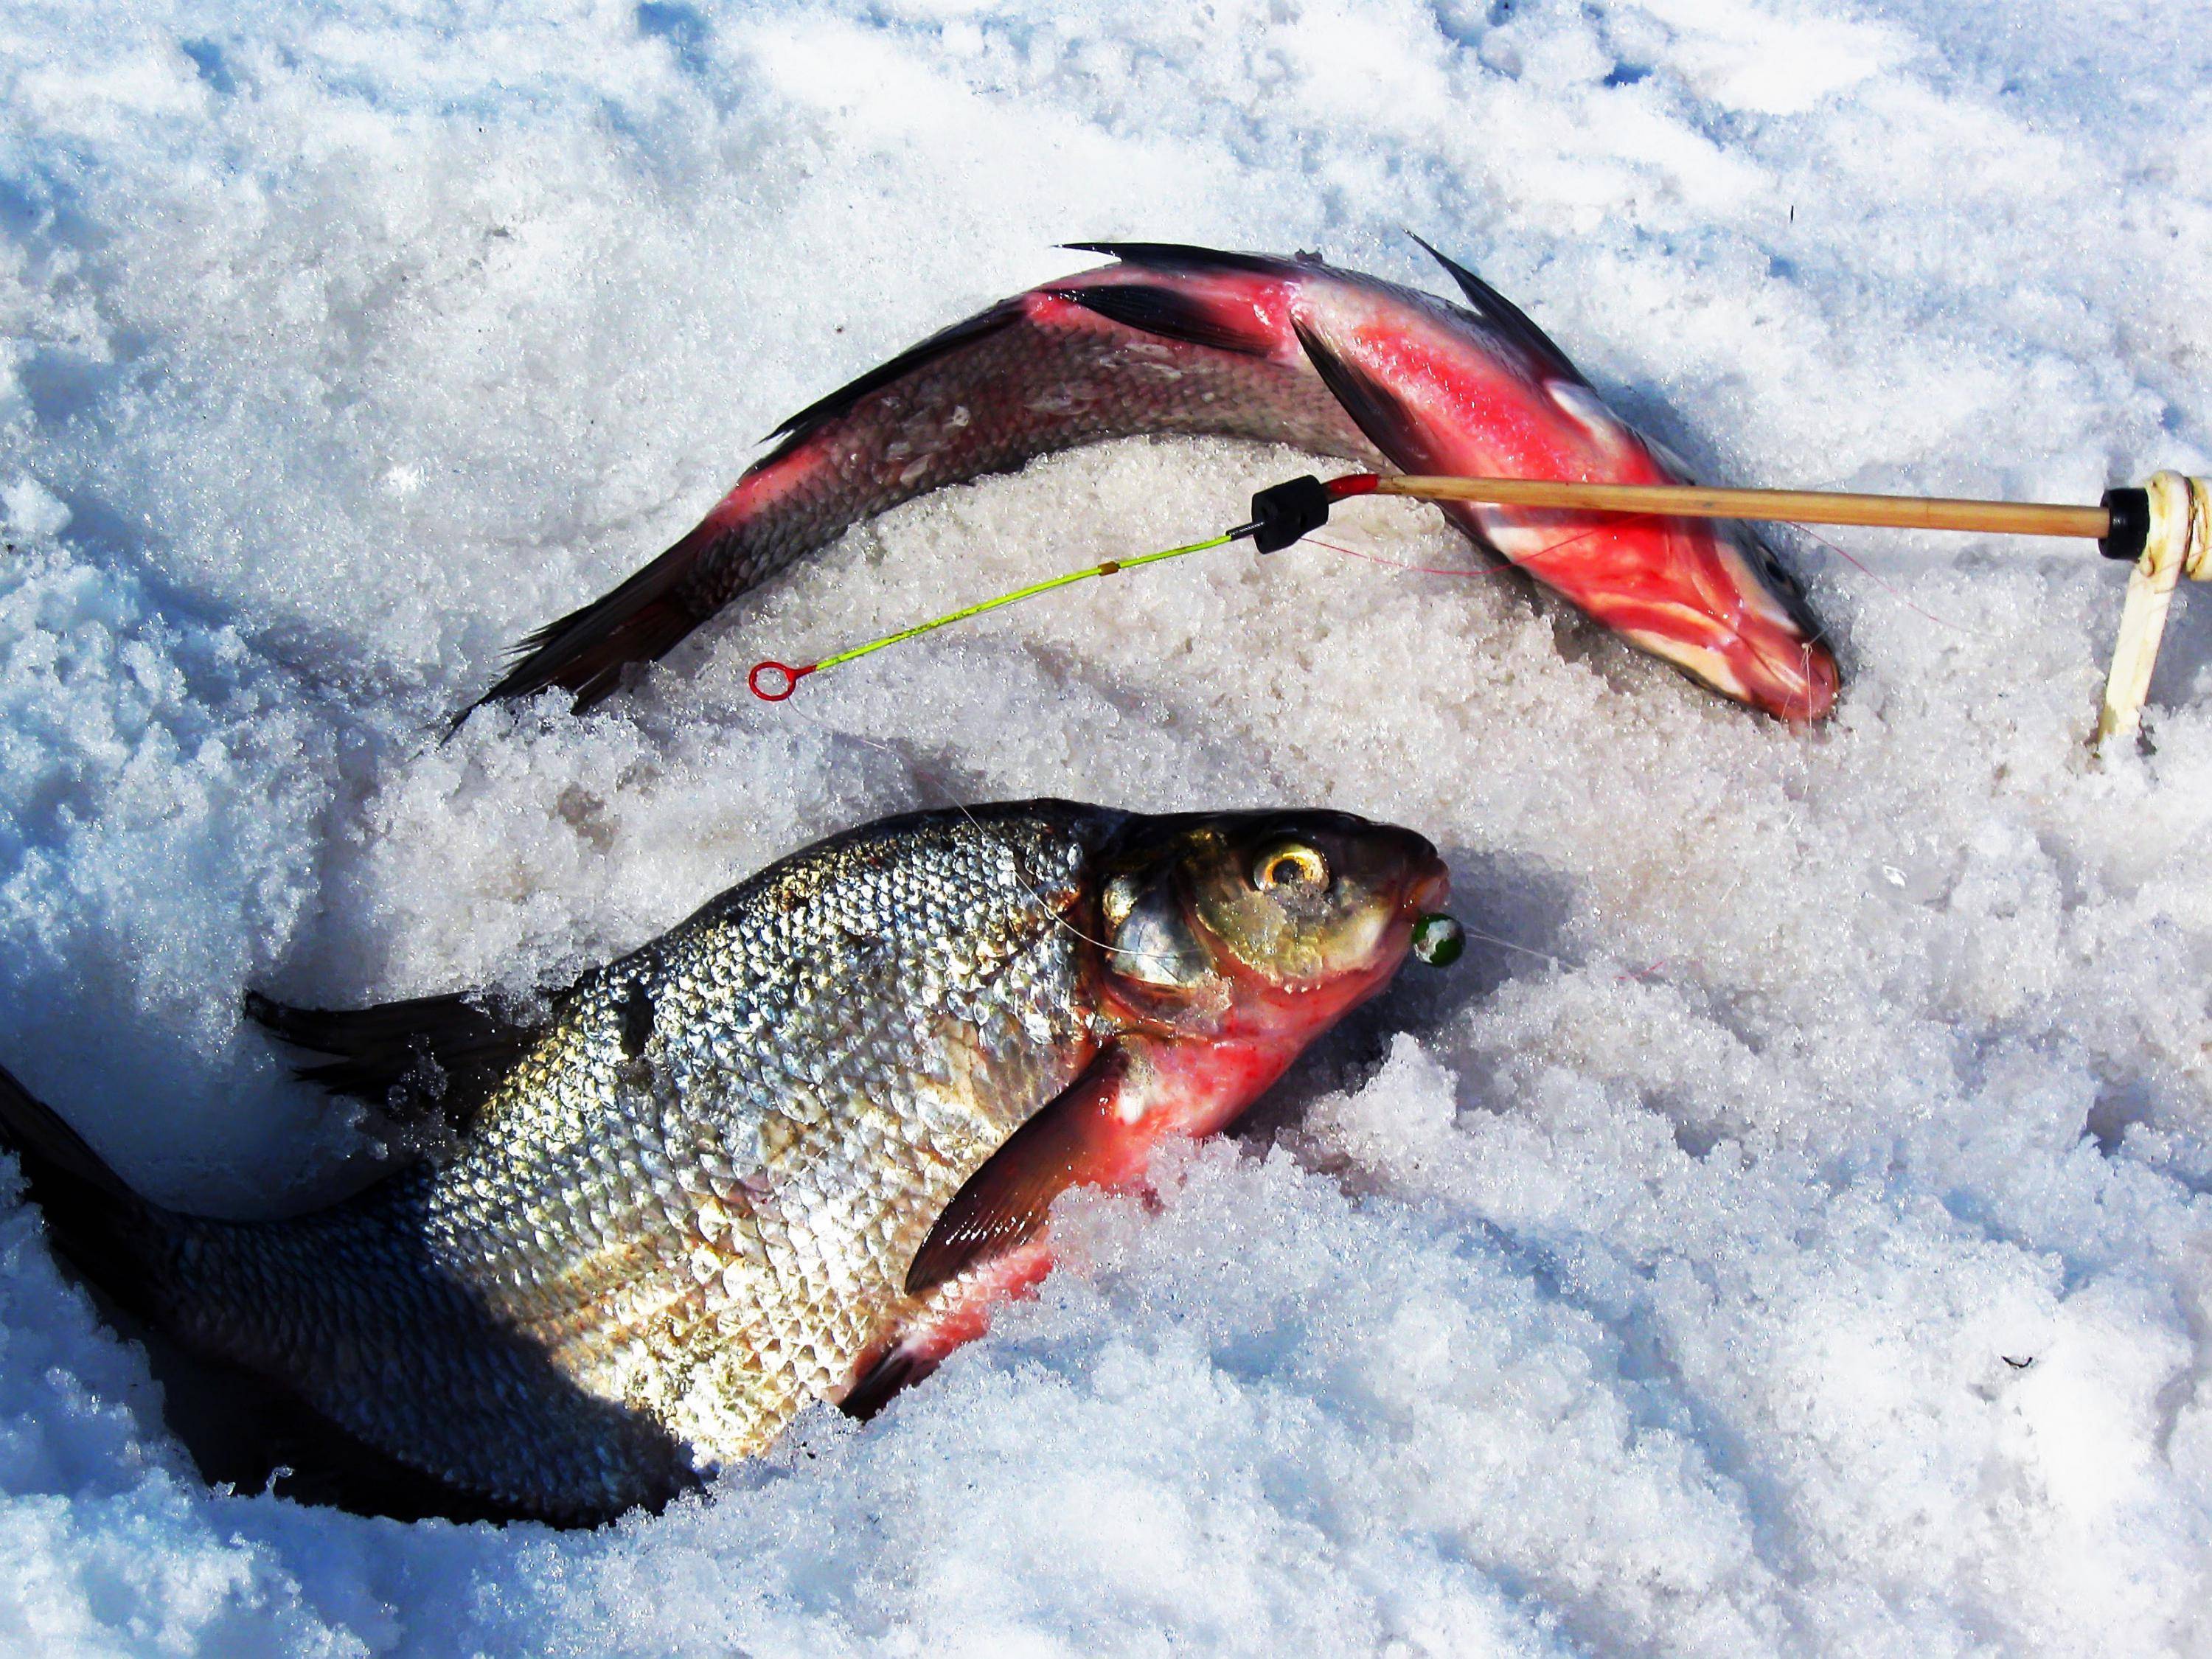 Что нужно для зимней рыбалки